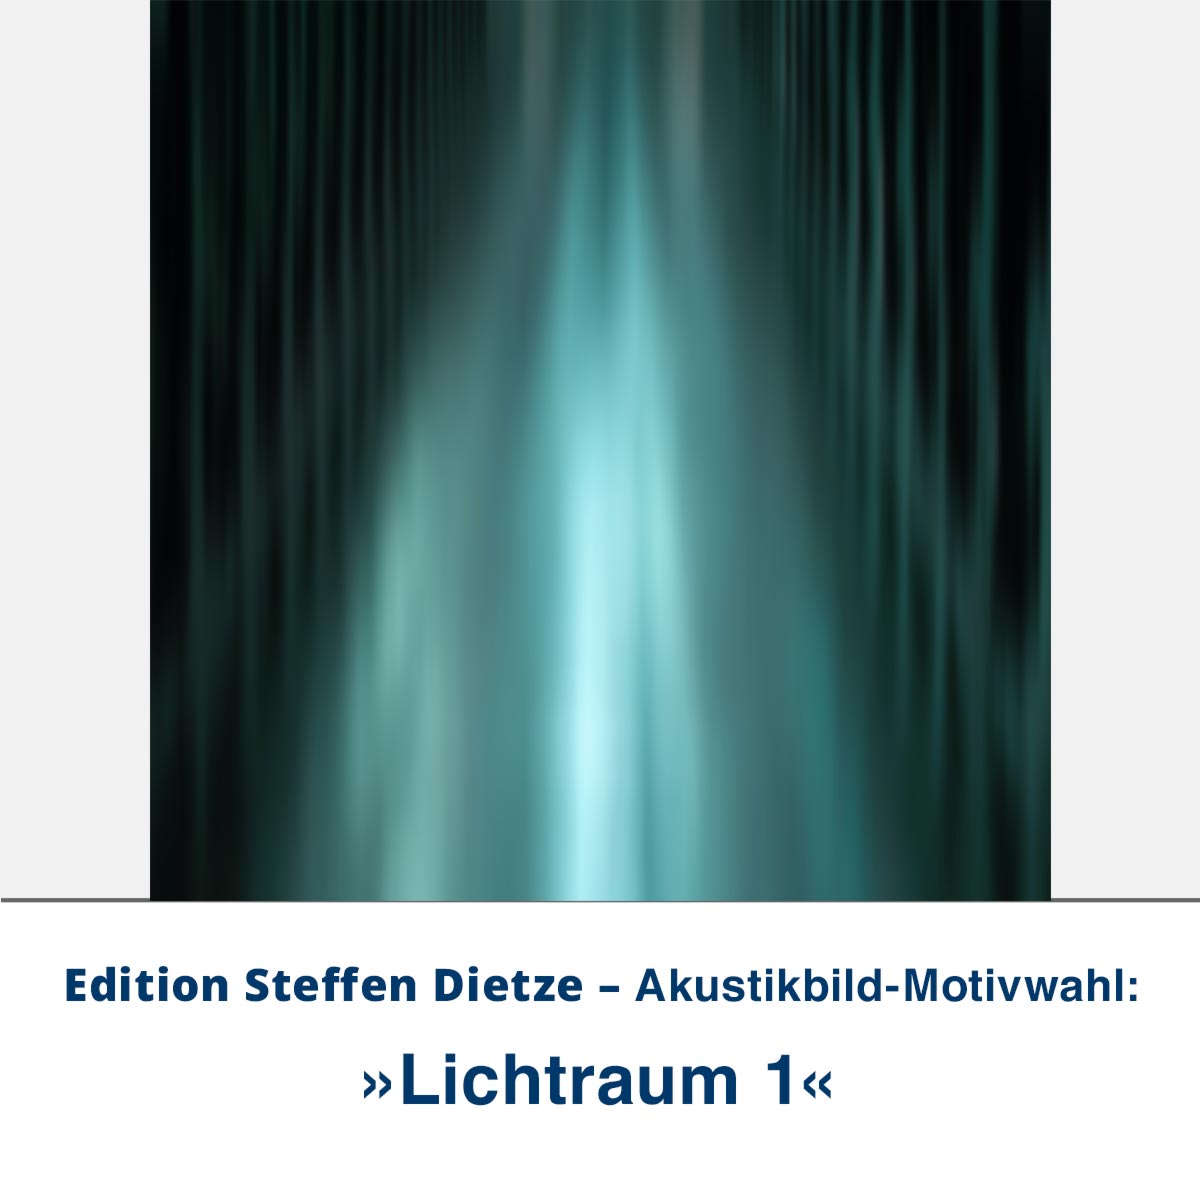 Akustikbild »Lichtraum 1«, Edition Steffen Dietze